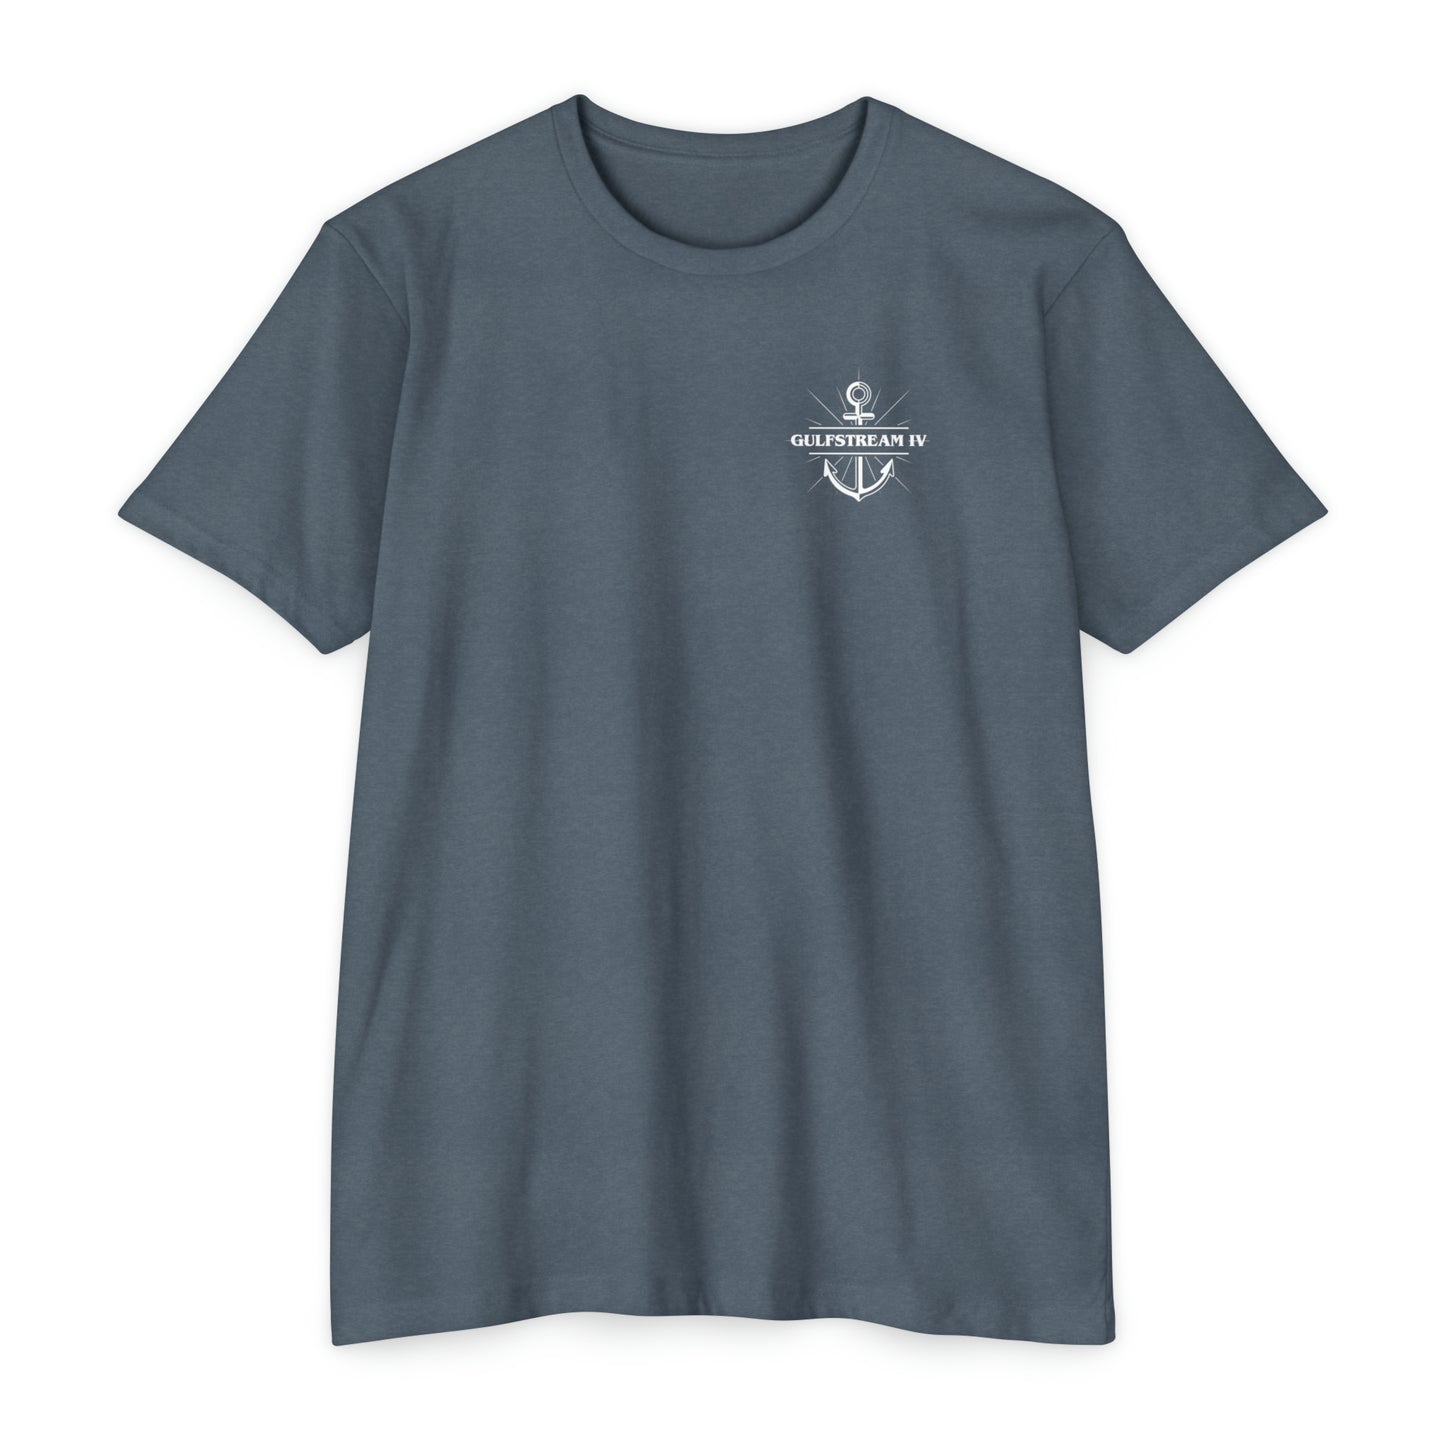 Gulfstream IV T-shirt